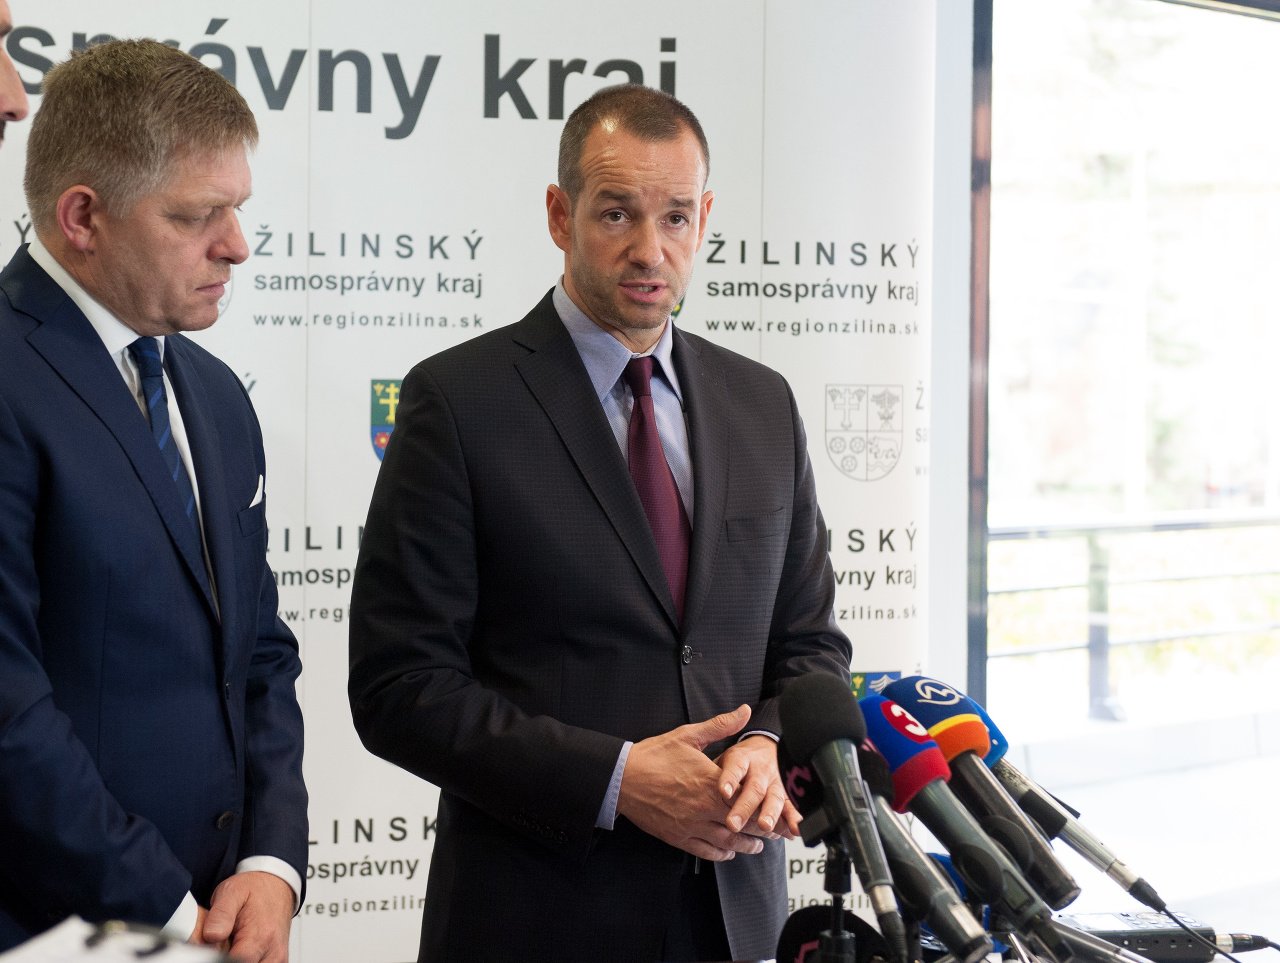 Viktor Stromček je novým generálnym manažérom strany Smer. Na snímke s predsedom strany Smer Robertom Ficom.